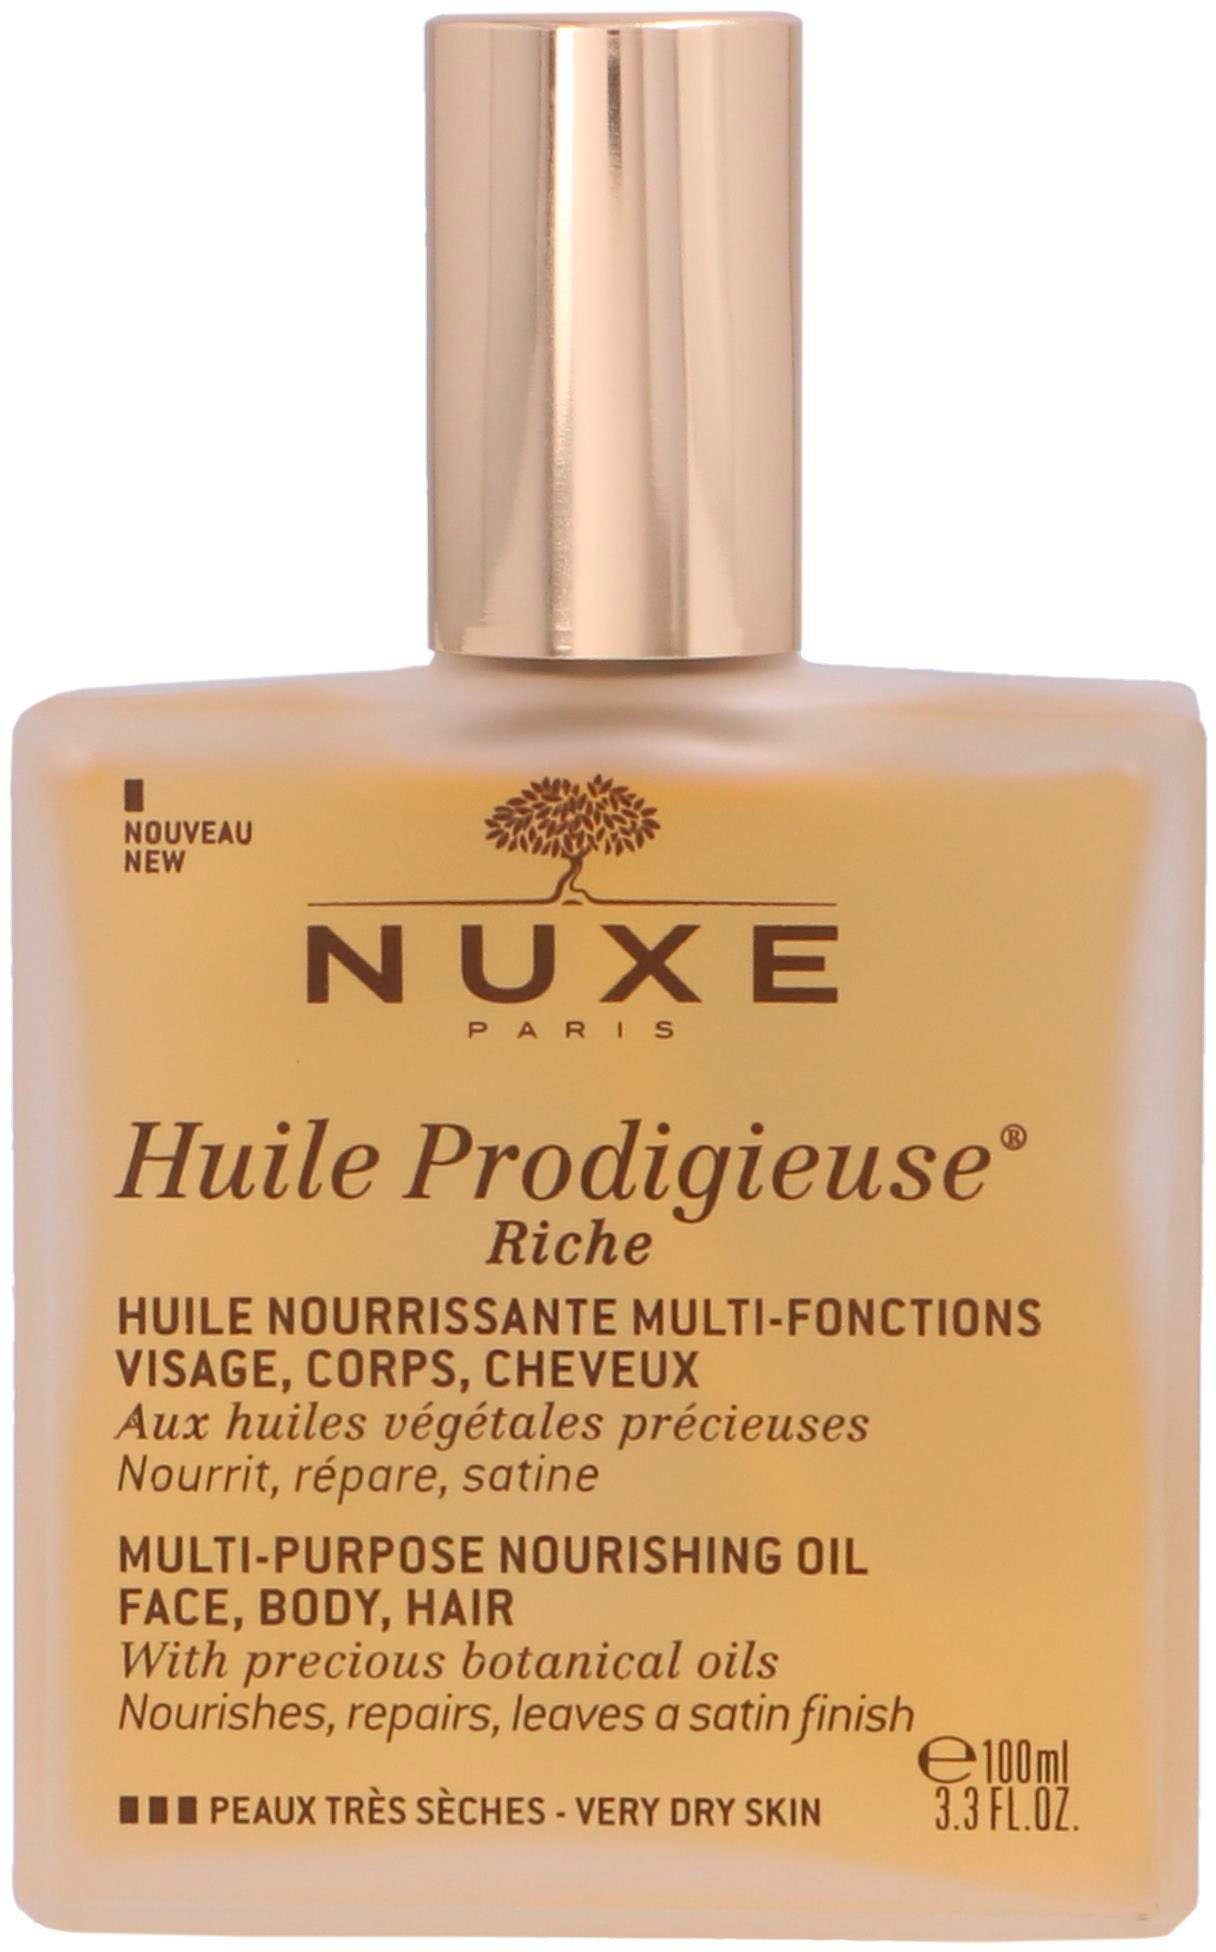 Nuxe Paris Körperöl Nuxe Huile Prodigieuse 100ml Body,Hair Oil Riche Face